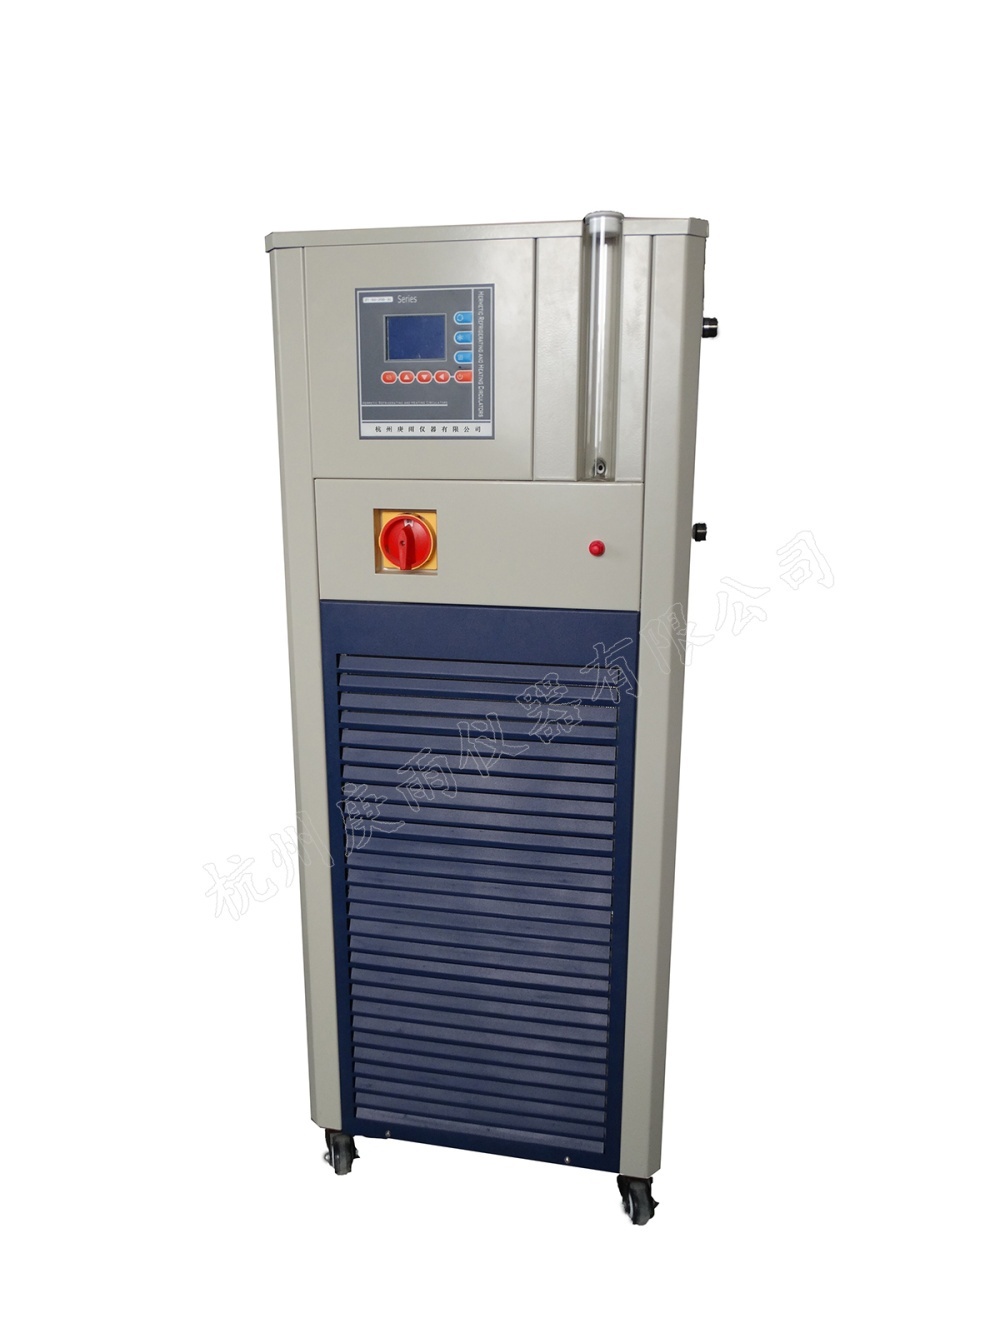 GDZT-100-200-30G高低温循环装置的图片